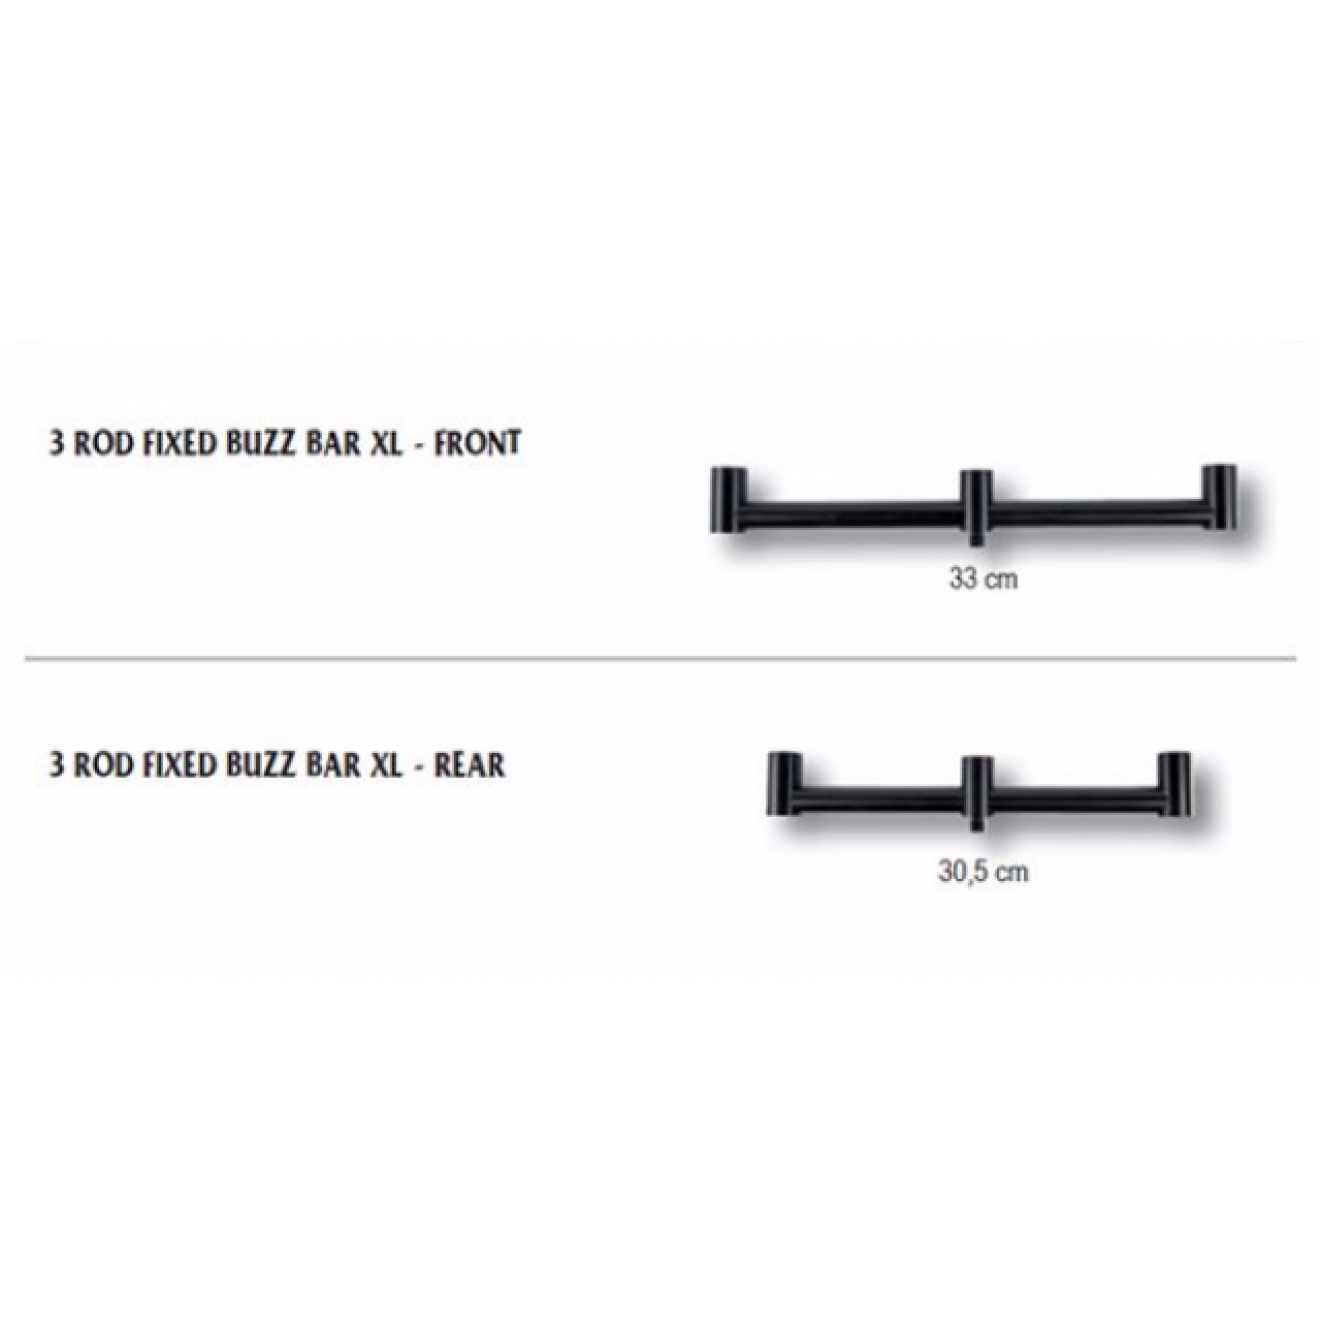 BLAX 3 Rod Fixed Buzz Bar XL FRONT - ACS370069